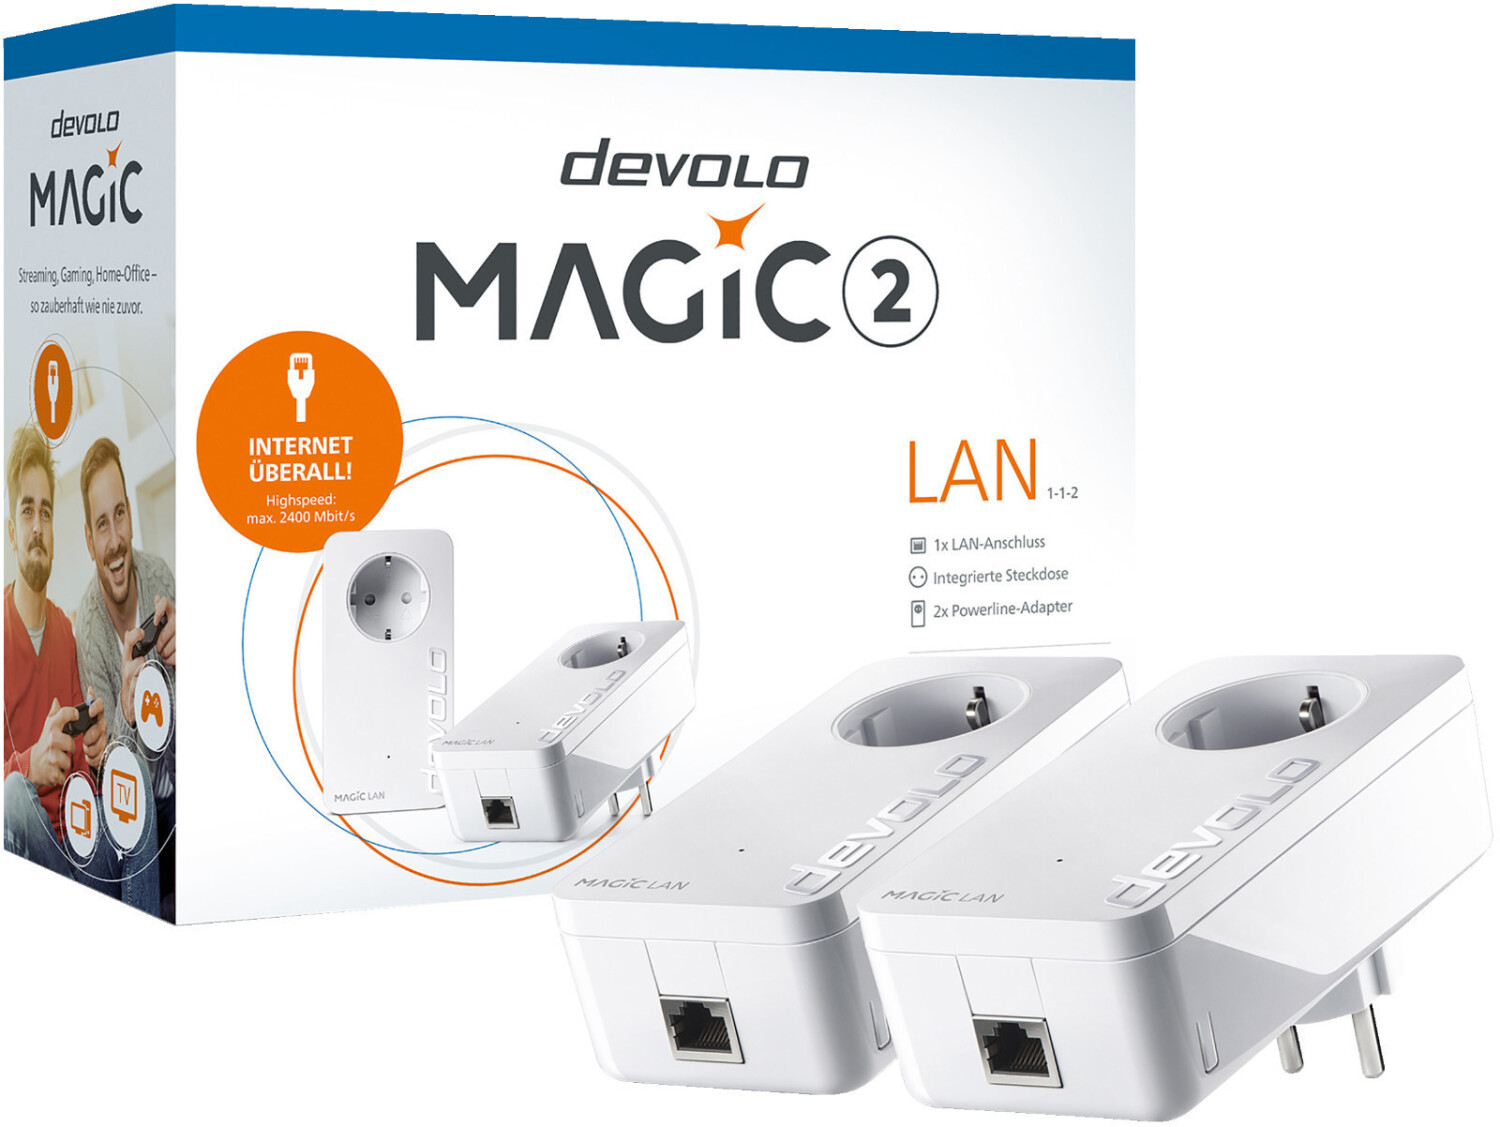 Buy devolo Magic 2 LAN Starter Kit from £99.95 (Today) – Best